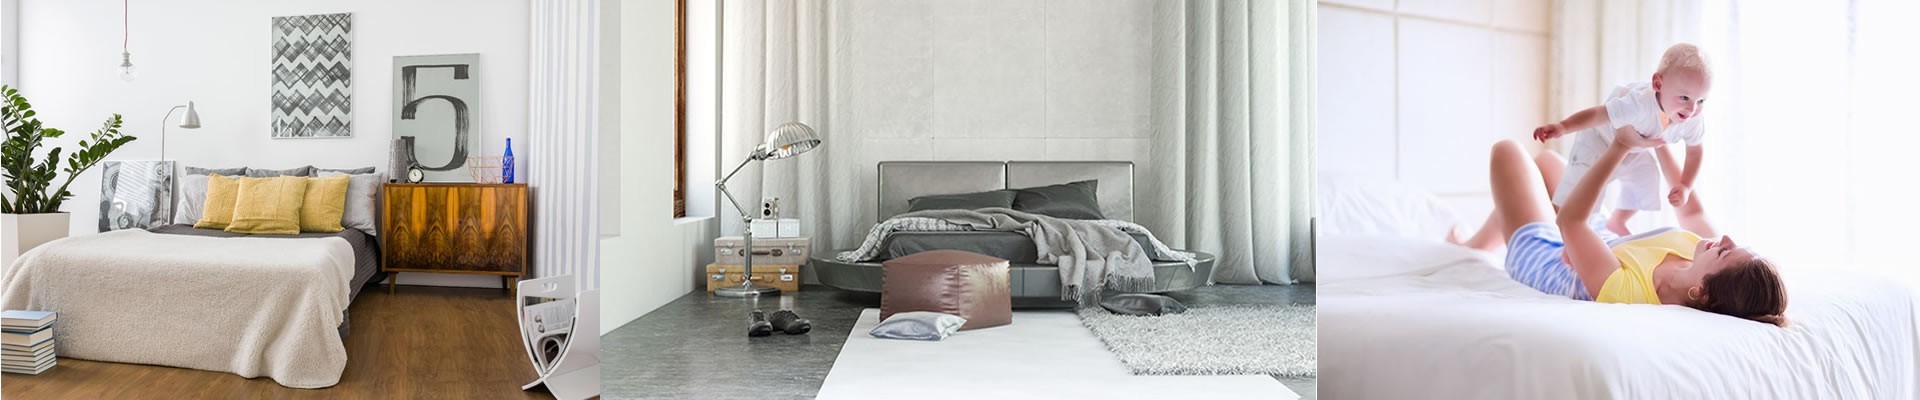 Bedroom | Bed Frames, Mattresses & Bedroom Furniture